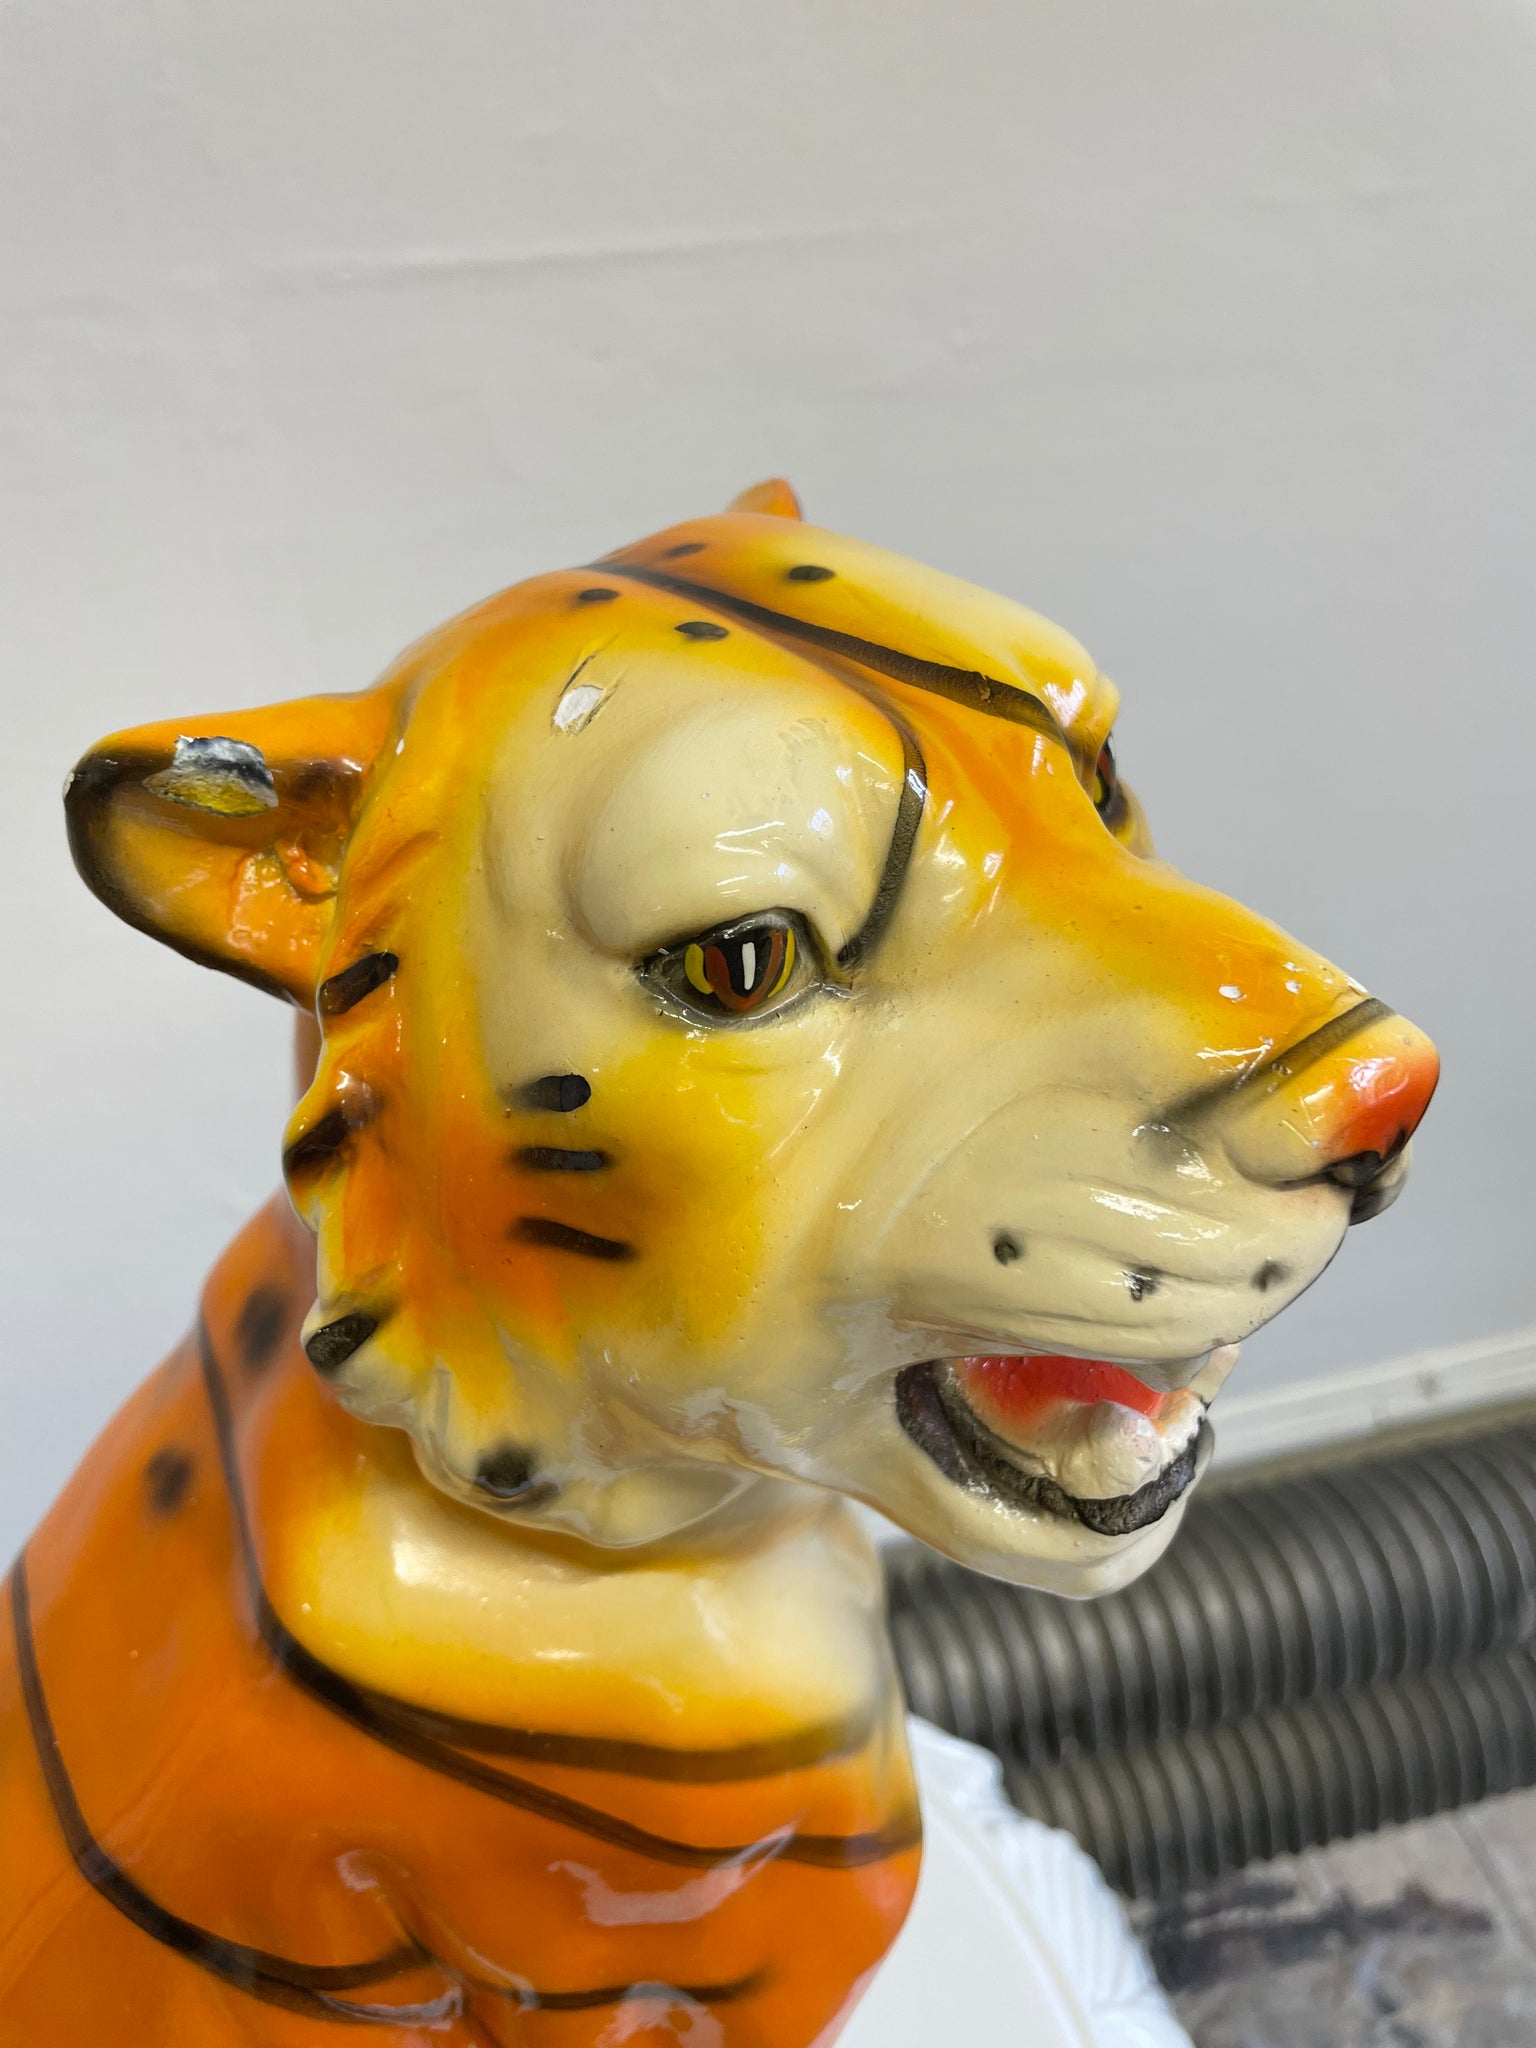 Tiger Vintage